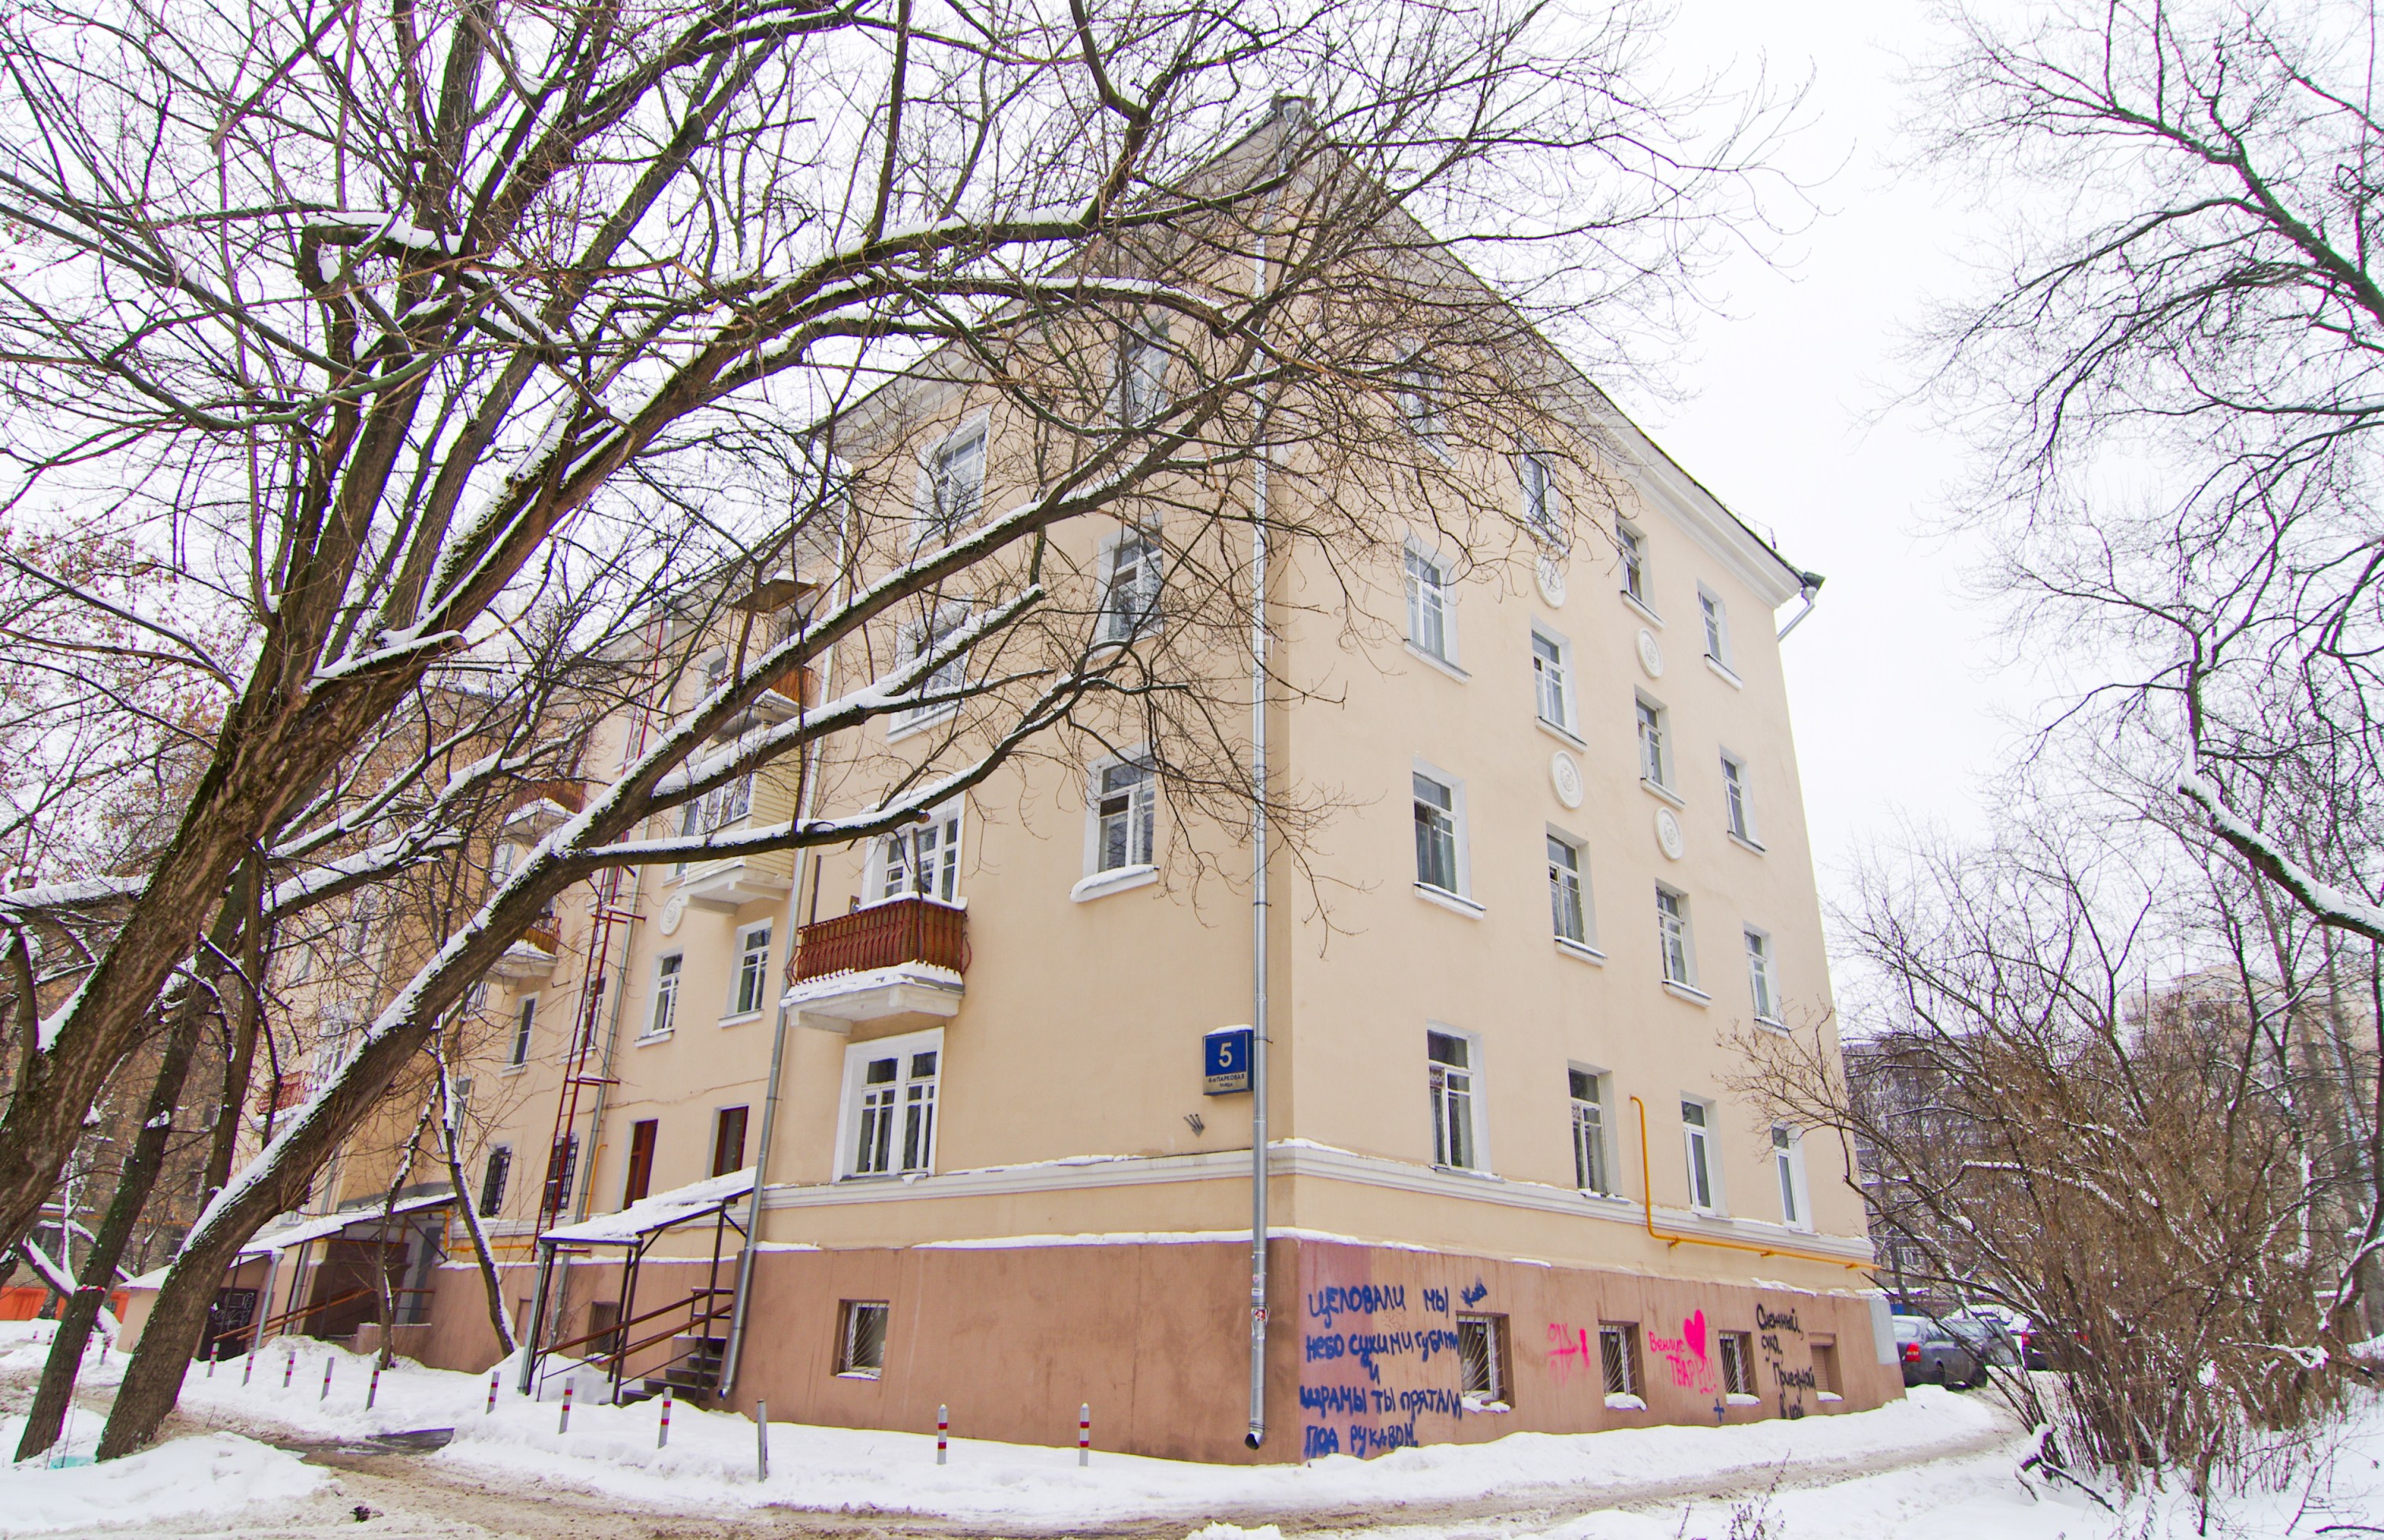 Программу реновации жилья поддерживает чуть менее 70% москвичей - опрос